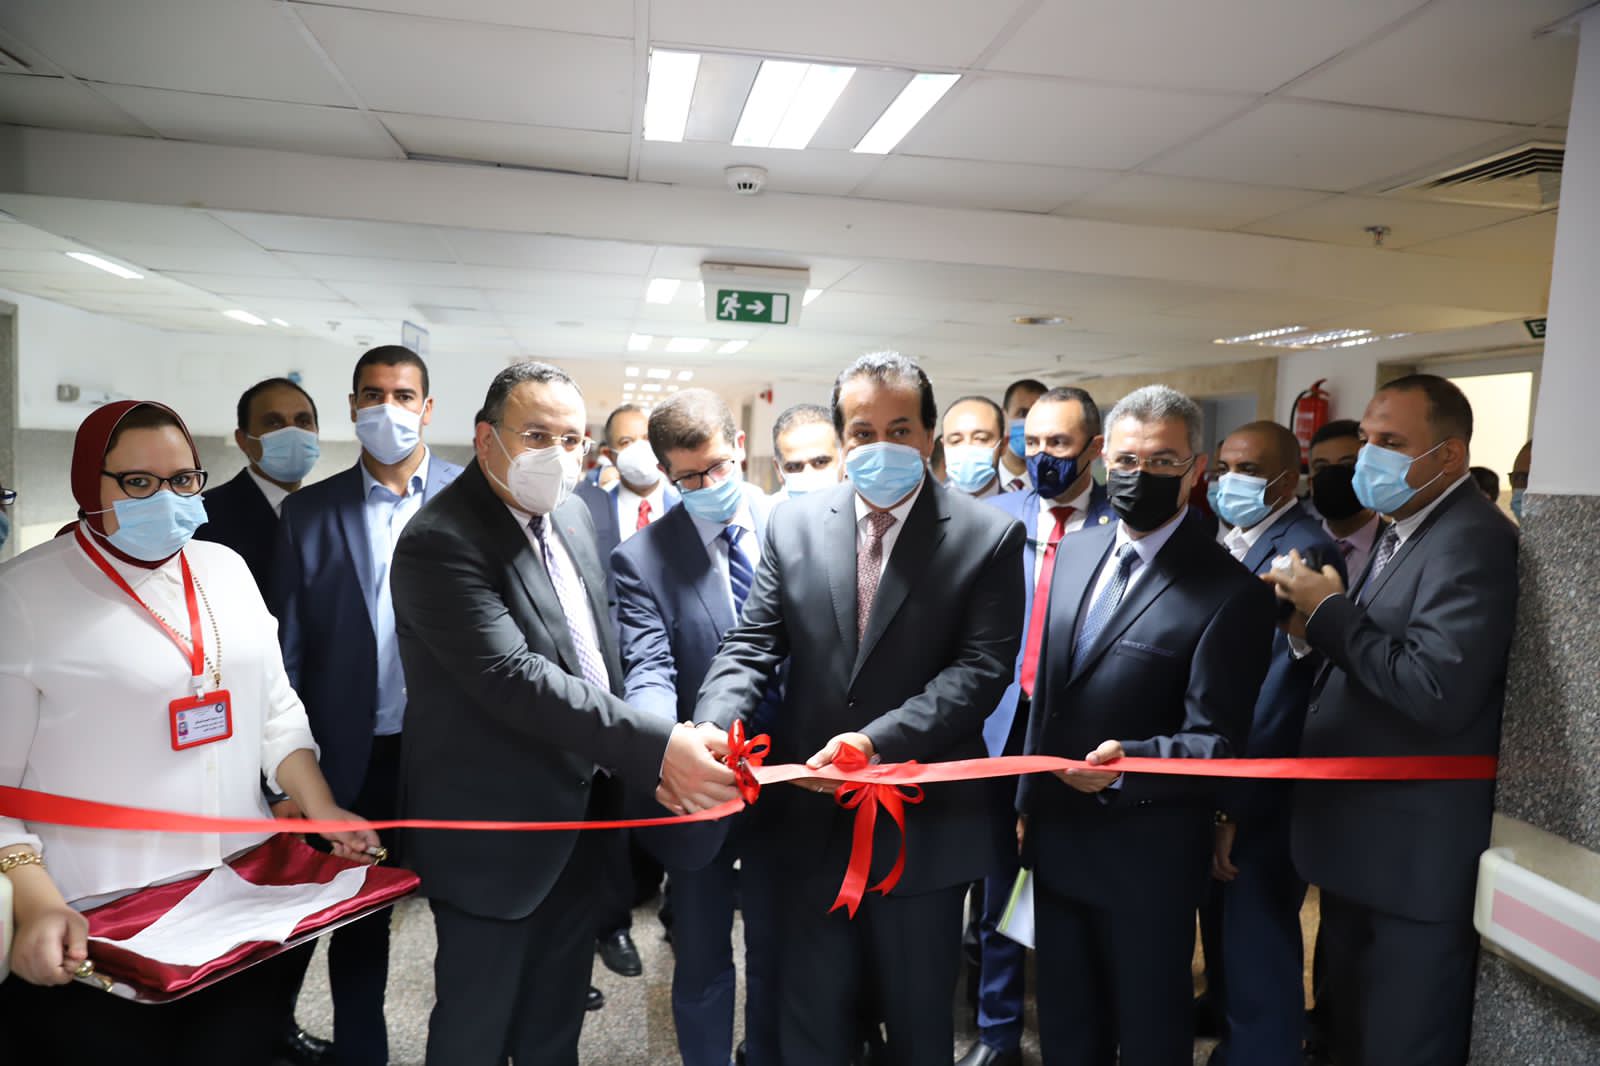 وزير التعليم العالي يفتتح وحدة قسطرة القلب وبنك الدم العلاجي بمستشفى سموحة بالإسكندرية

